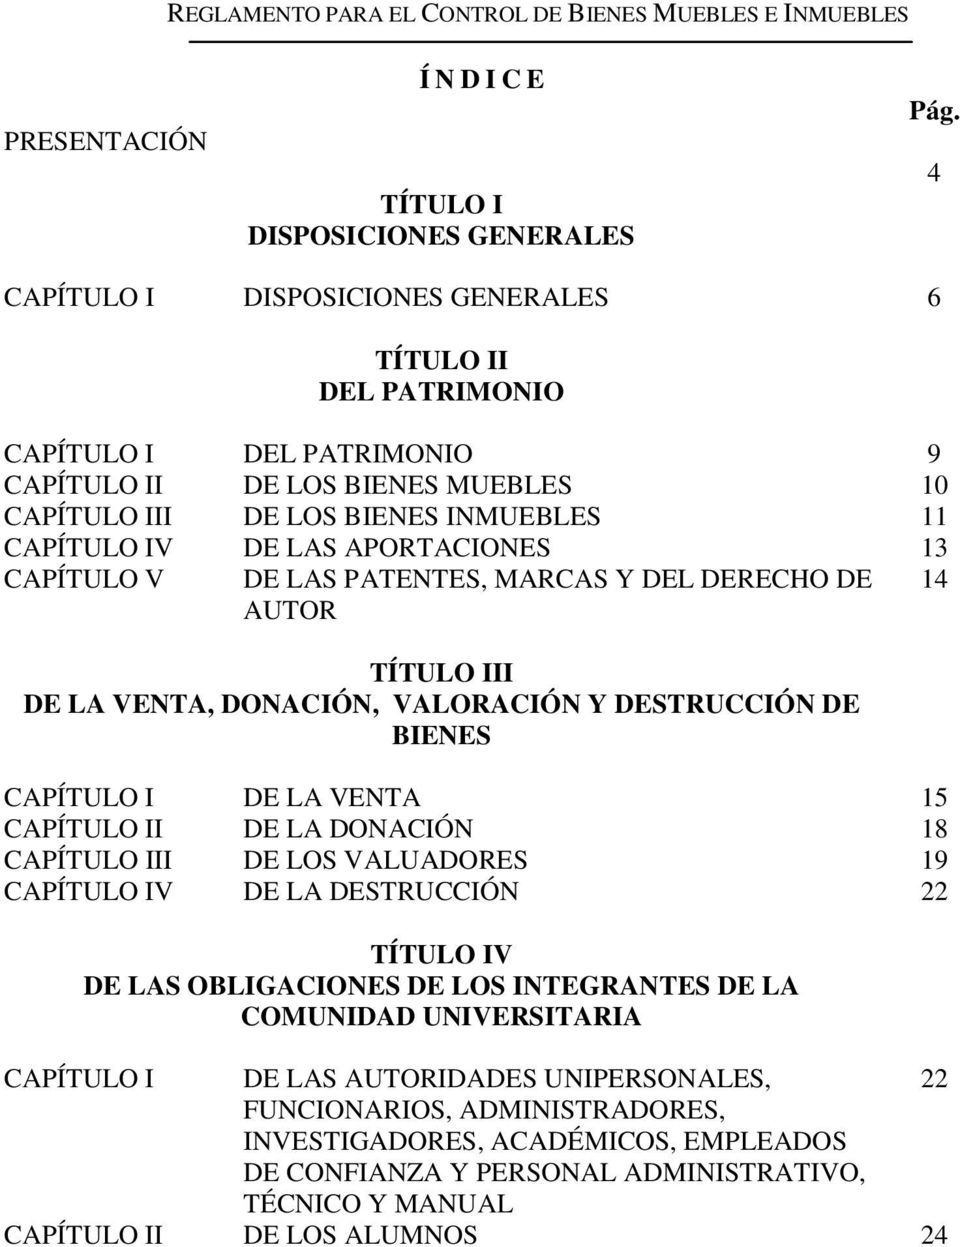 APORTACIONES 13 CAPÍTULO V DE LAS PATENTES, MARCAS Y DEL DERECHO DE AUTOR 14 TÍTULO III DE LA VENTA, DONACIÓN, VALORACIÓN Y DESTRUCCIÓN DE BIENES CAPÍTULO I DE LA VENTA 15 CAPÍTULO II DE LA DONACIÓN